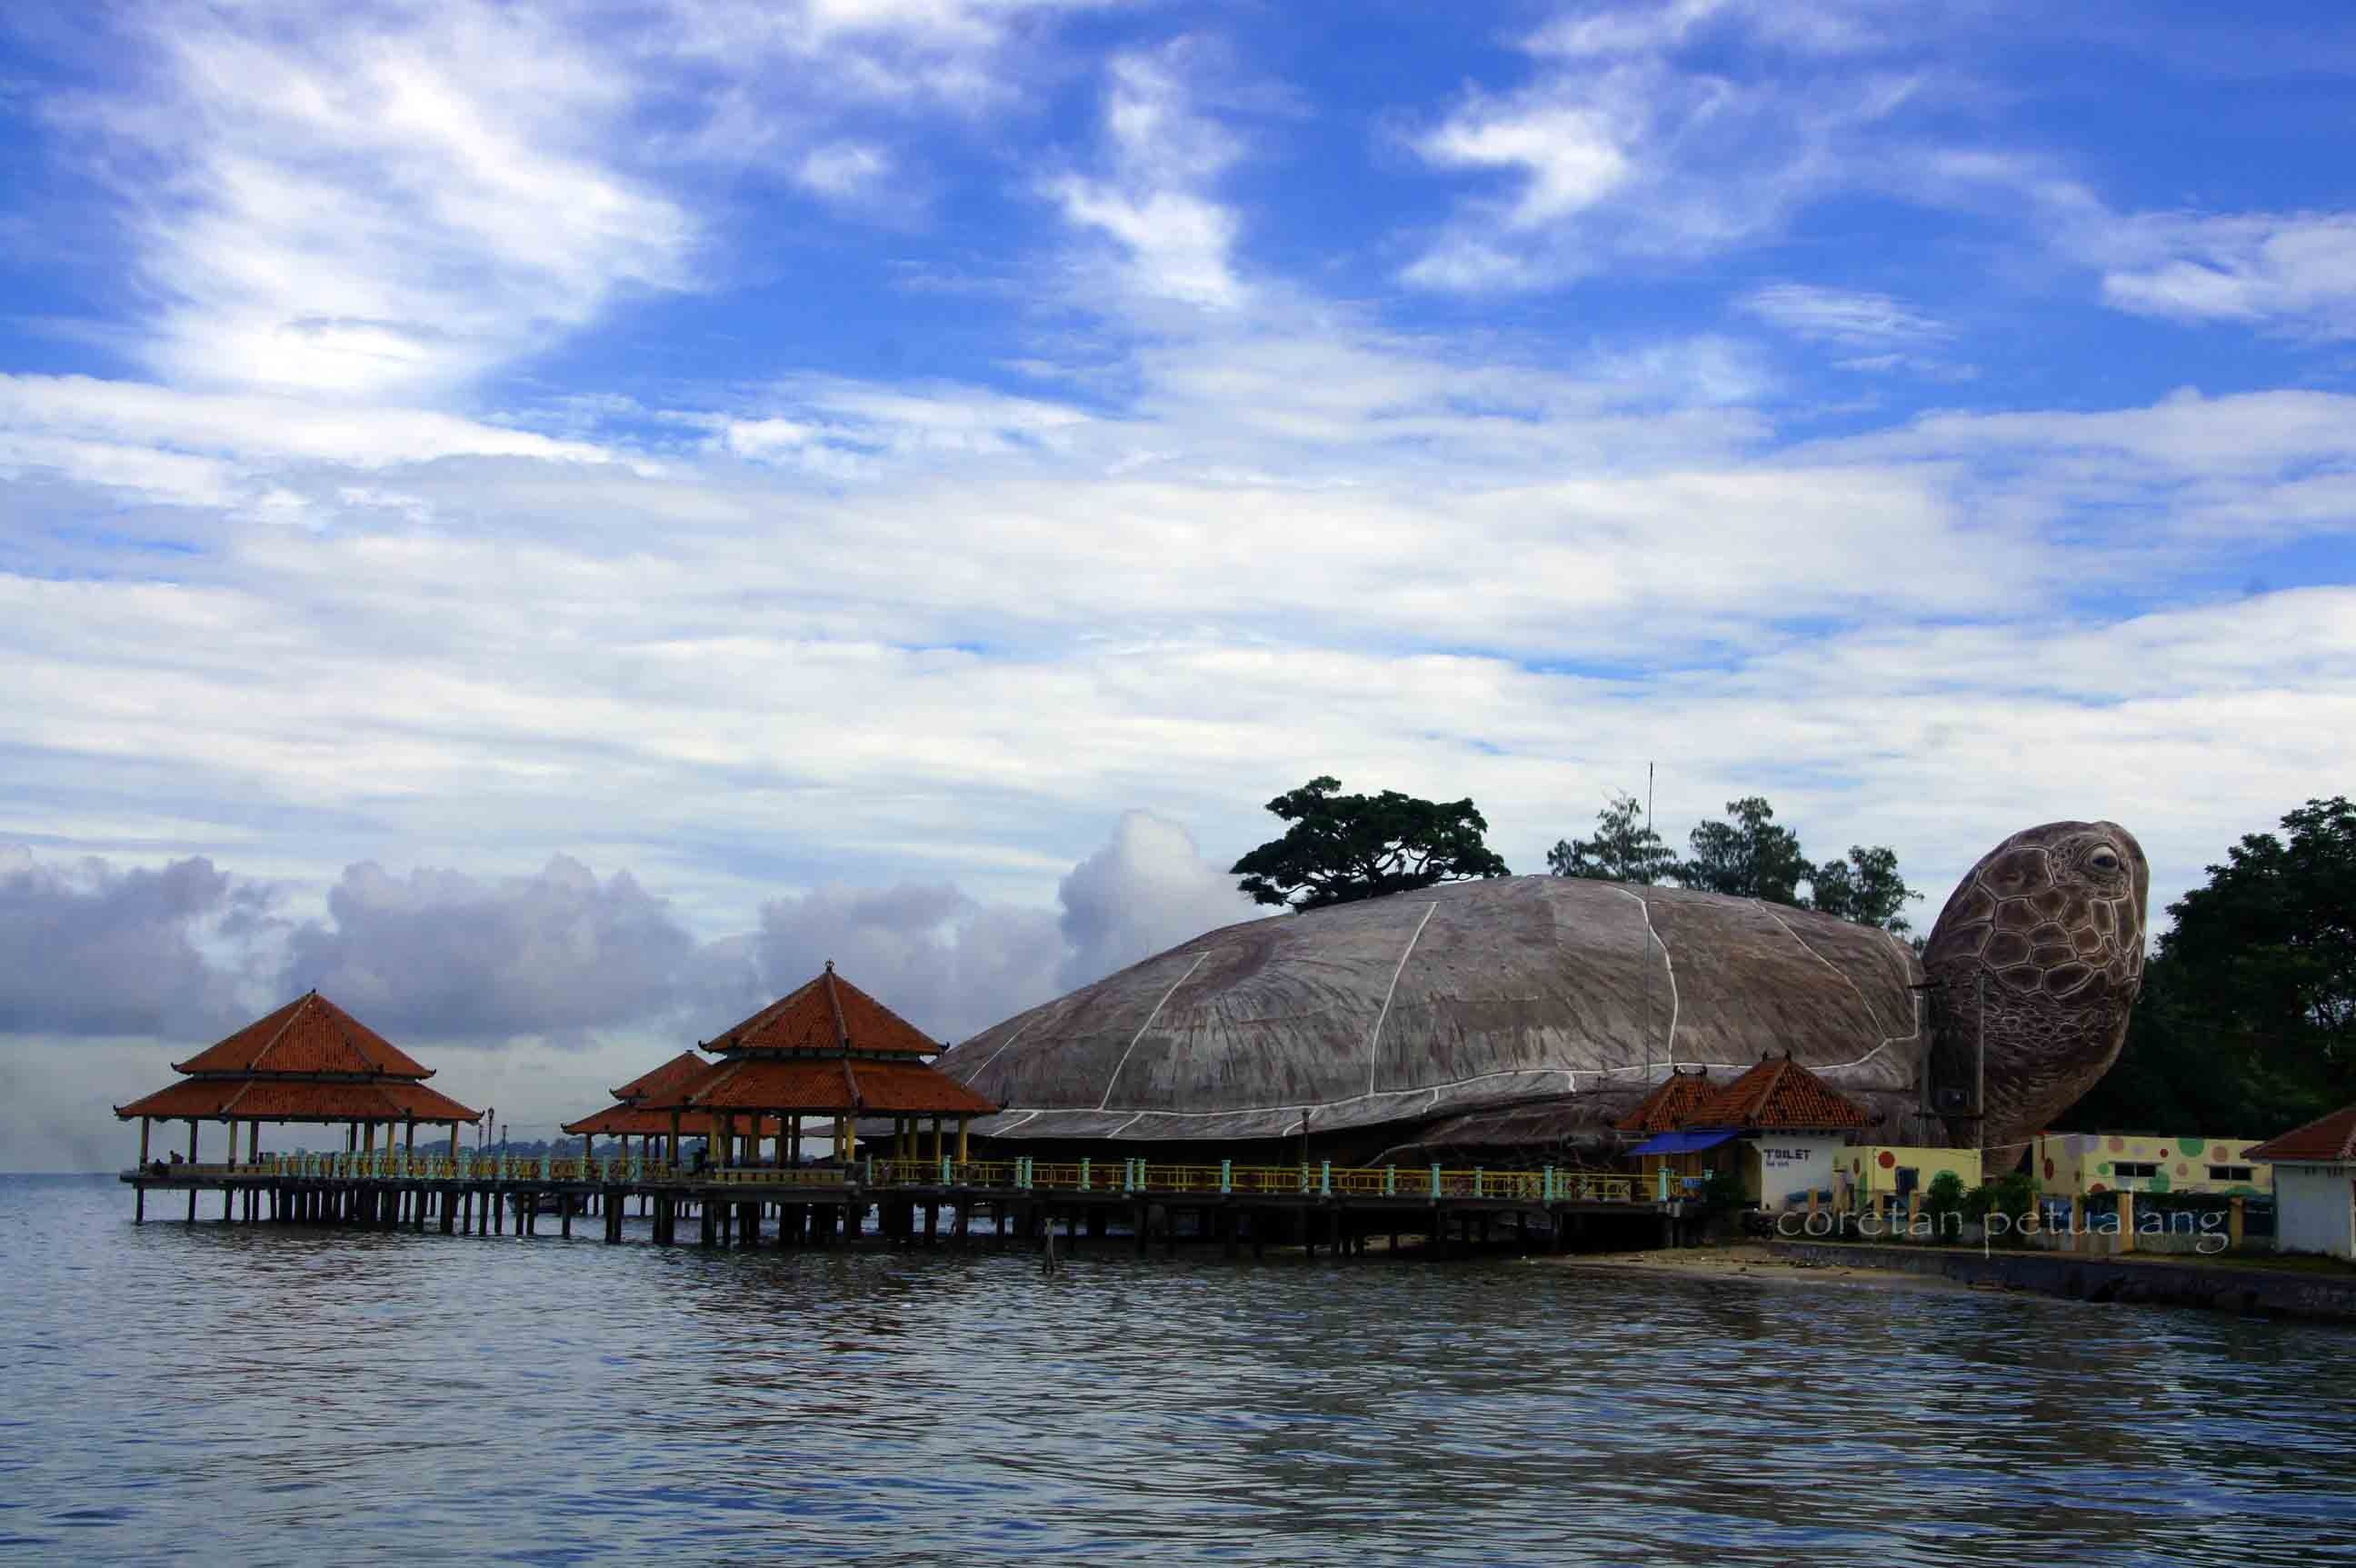  Tempat  Wisata  Di  Pulau  Jawa  Yang  Wajib  Dikunjungi  93 